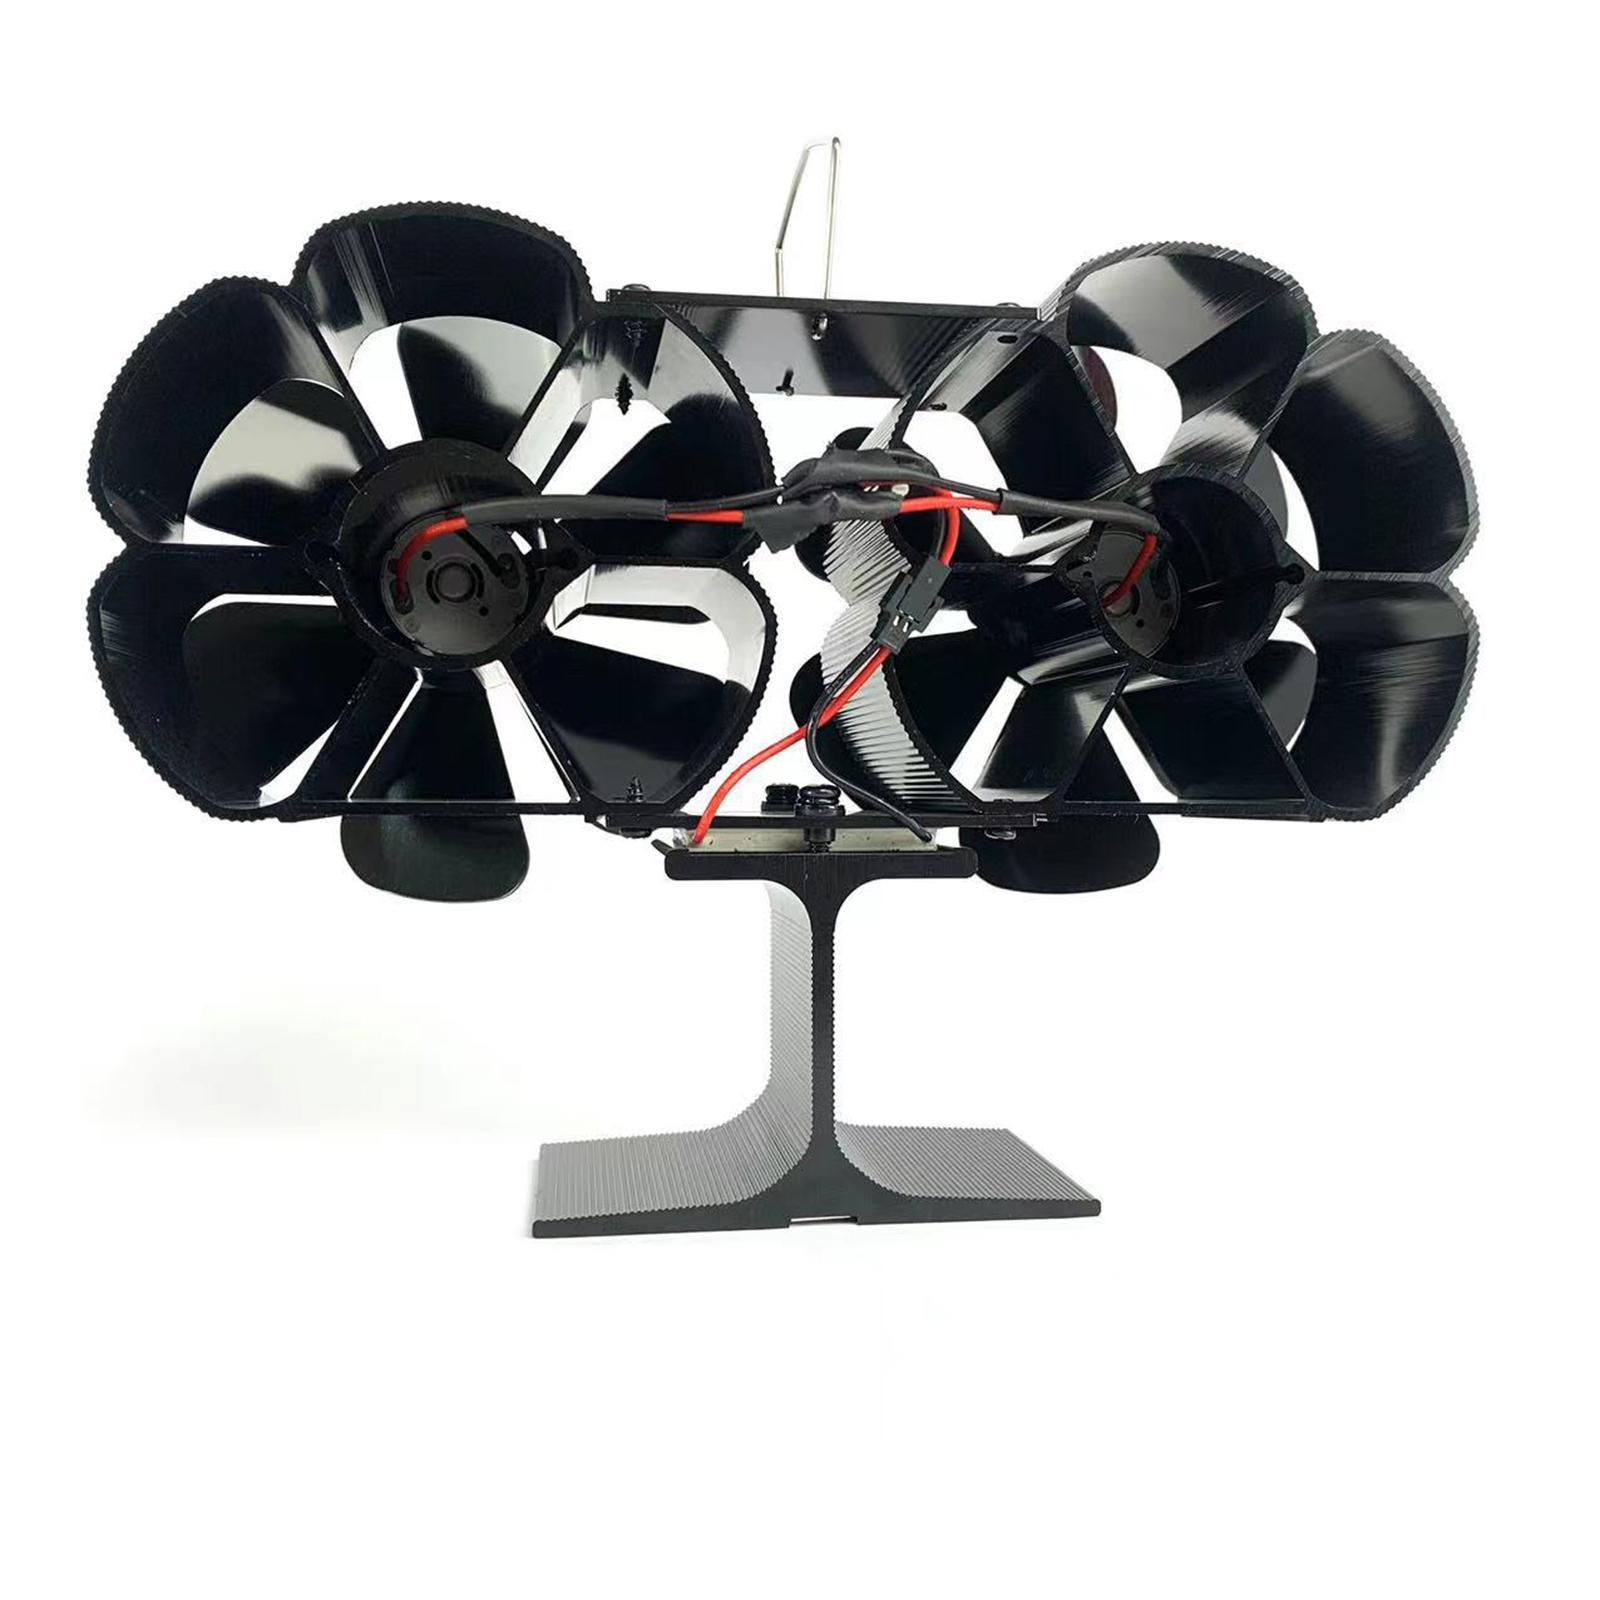 12  Heat Powered  Fan Heater Tool Living Room Silent Fireplace Fan